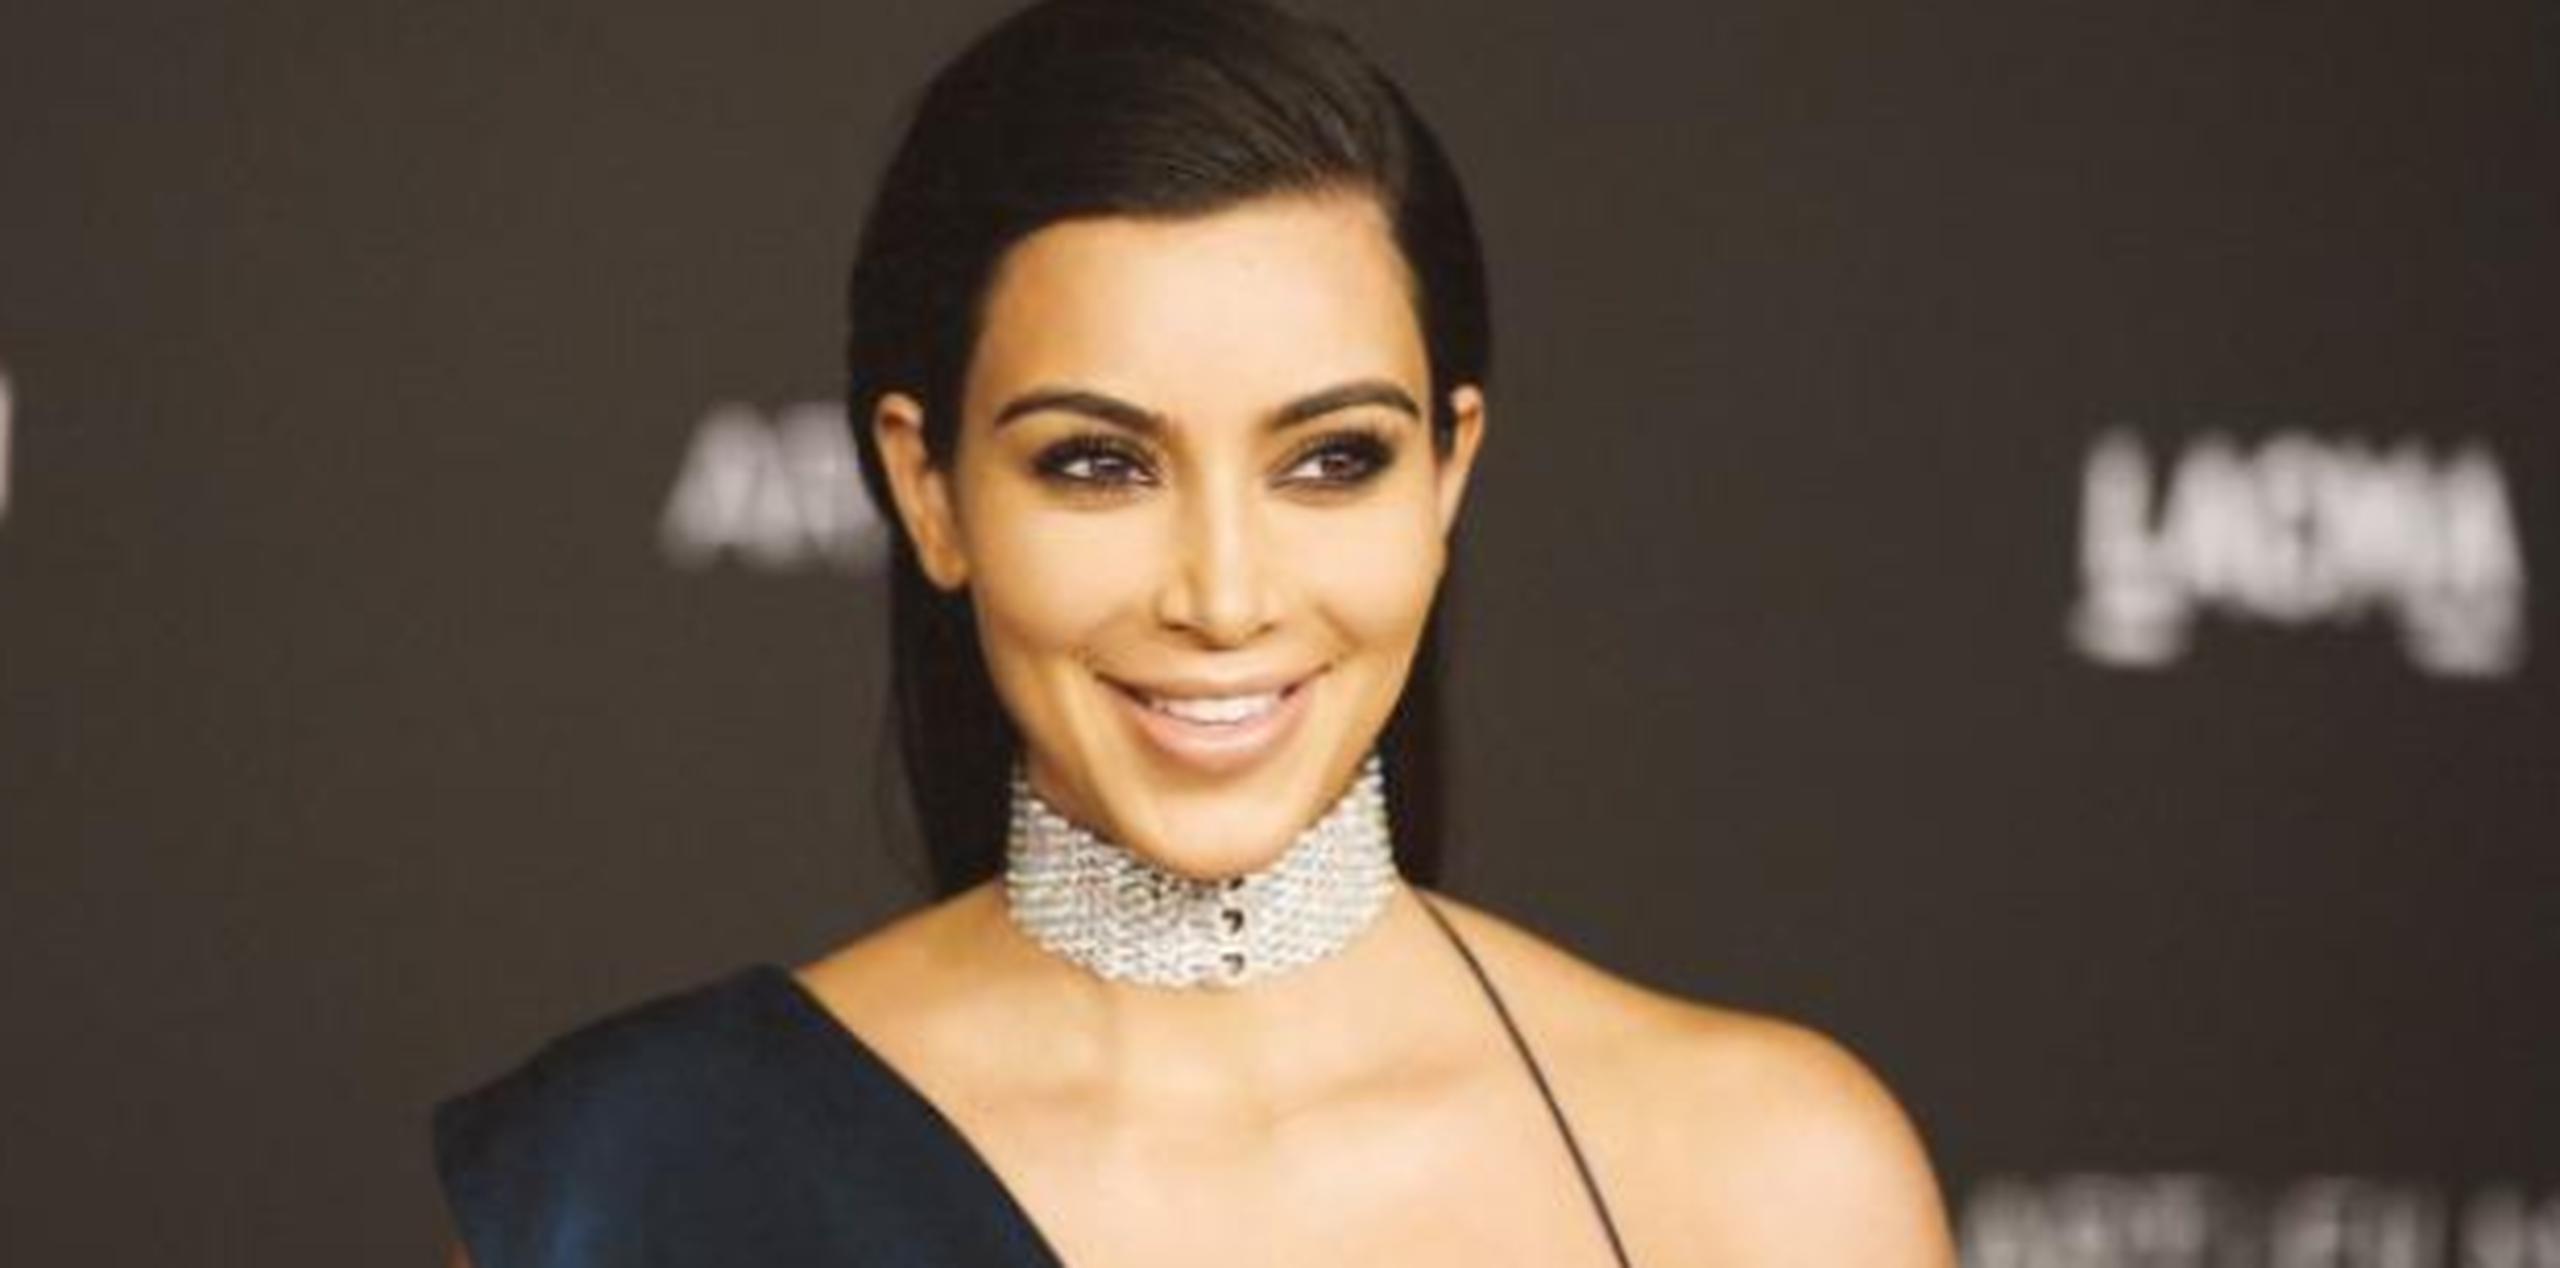 El vídeo publicado ayer por Kardashian anunciando las imágenes había sido visto –hasta esta mañana- 5.2 millones de veces y tiene 56.8 “likes” en Instagram. (Archivo)